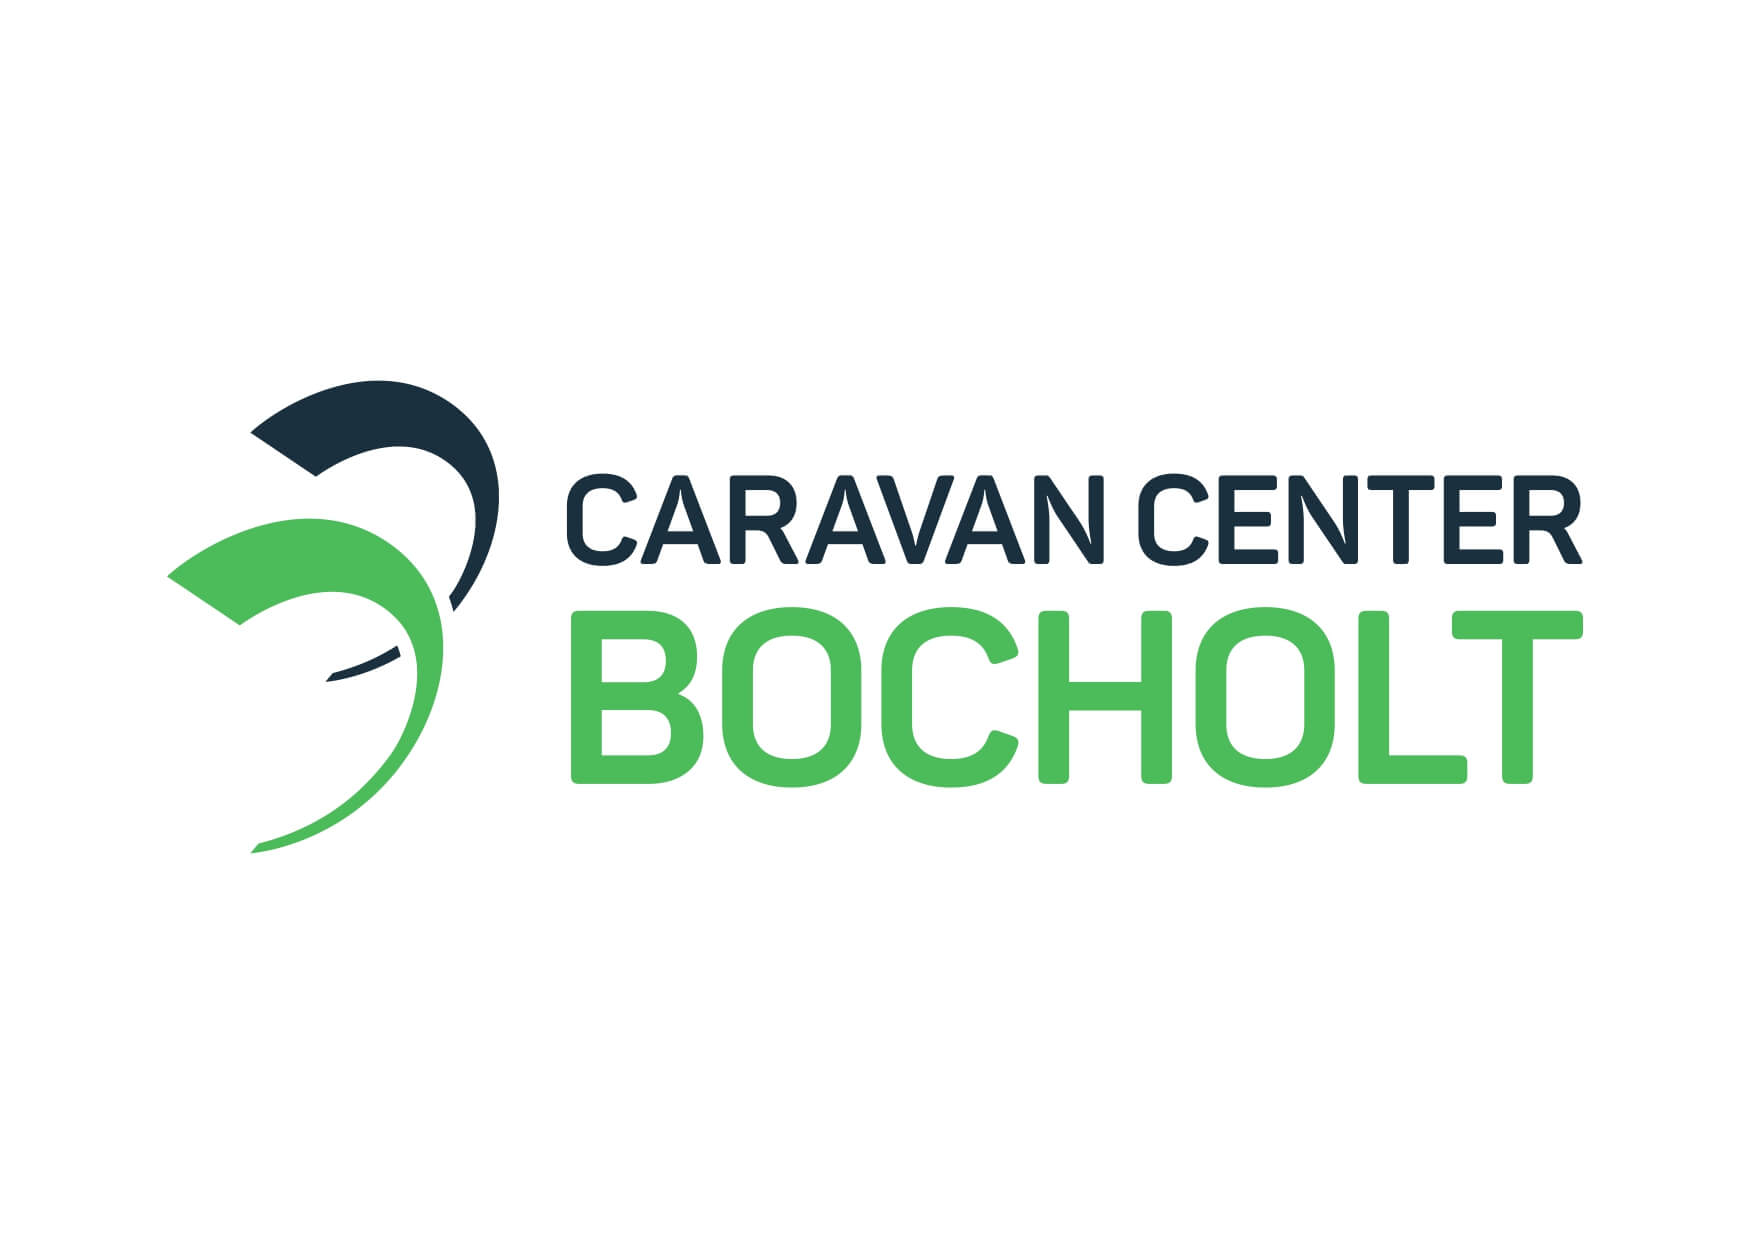 Caravan center Bocholt